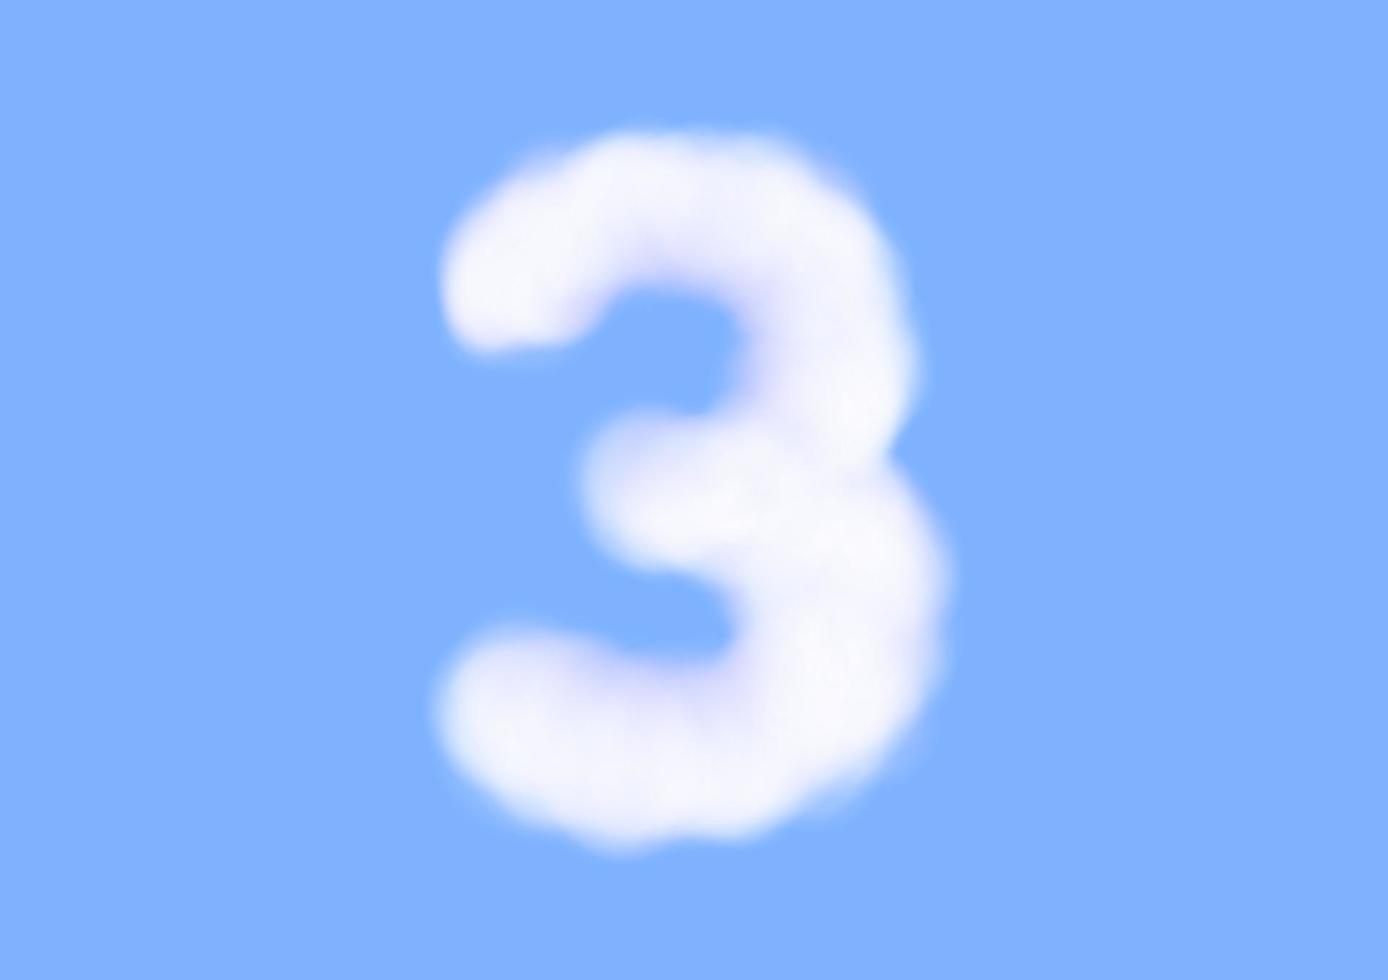 nummer drie lettertypevorm in wolkenvector op blauwe hemelachtergrond vector